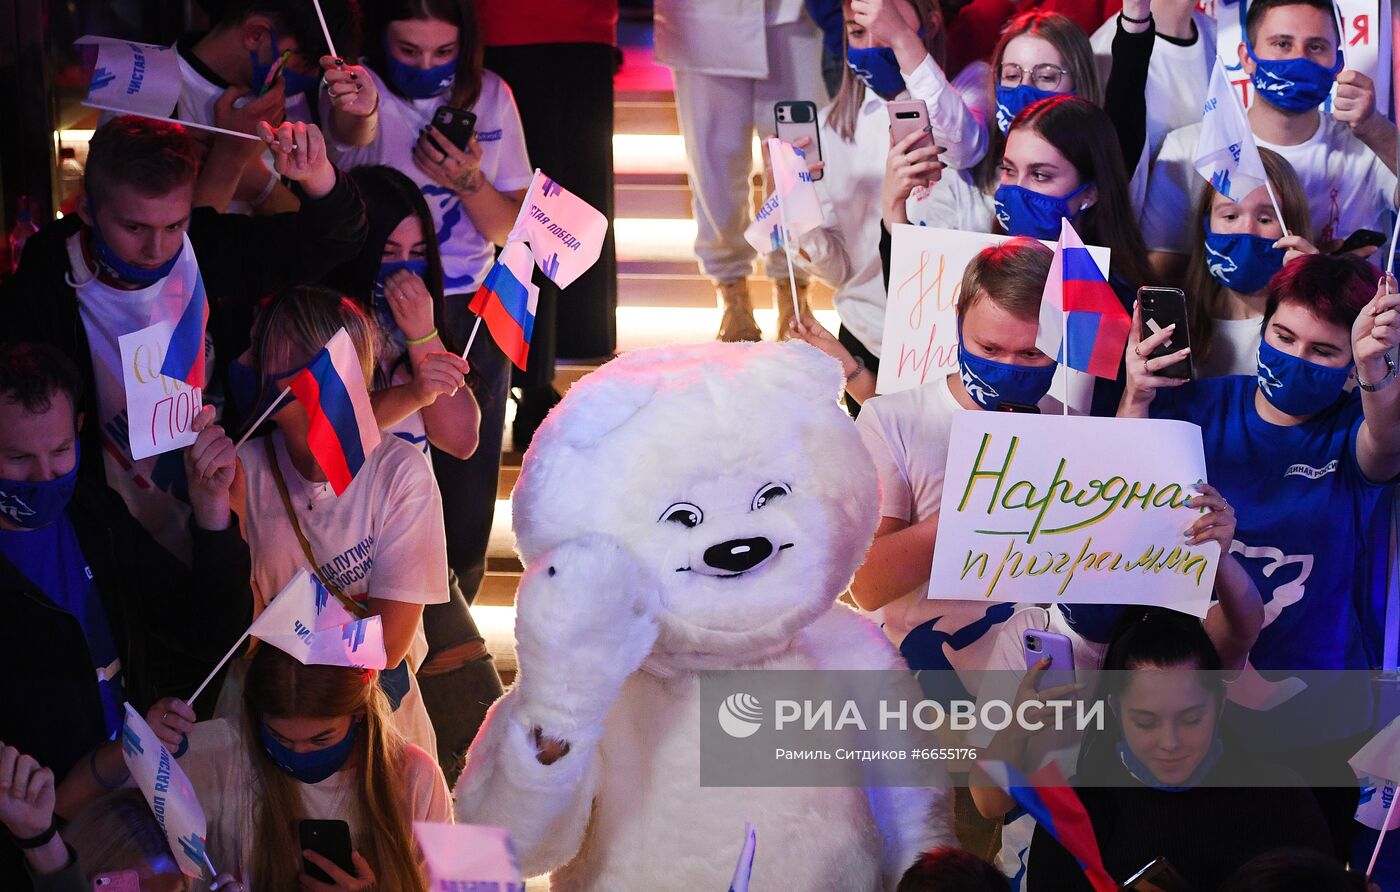 Мероприятия партии "Единая Россия" по завершении единого дня голосования